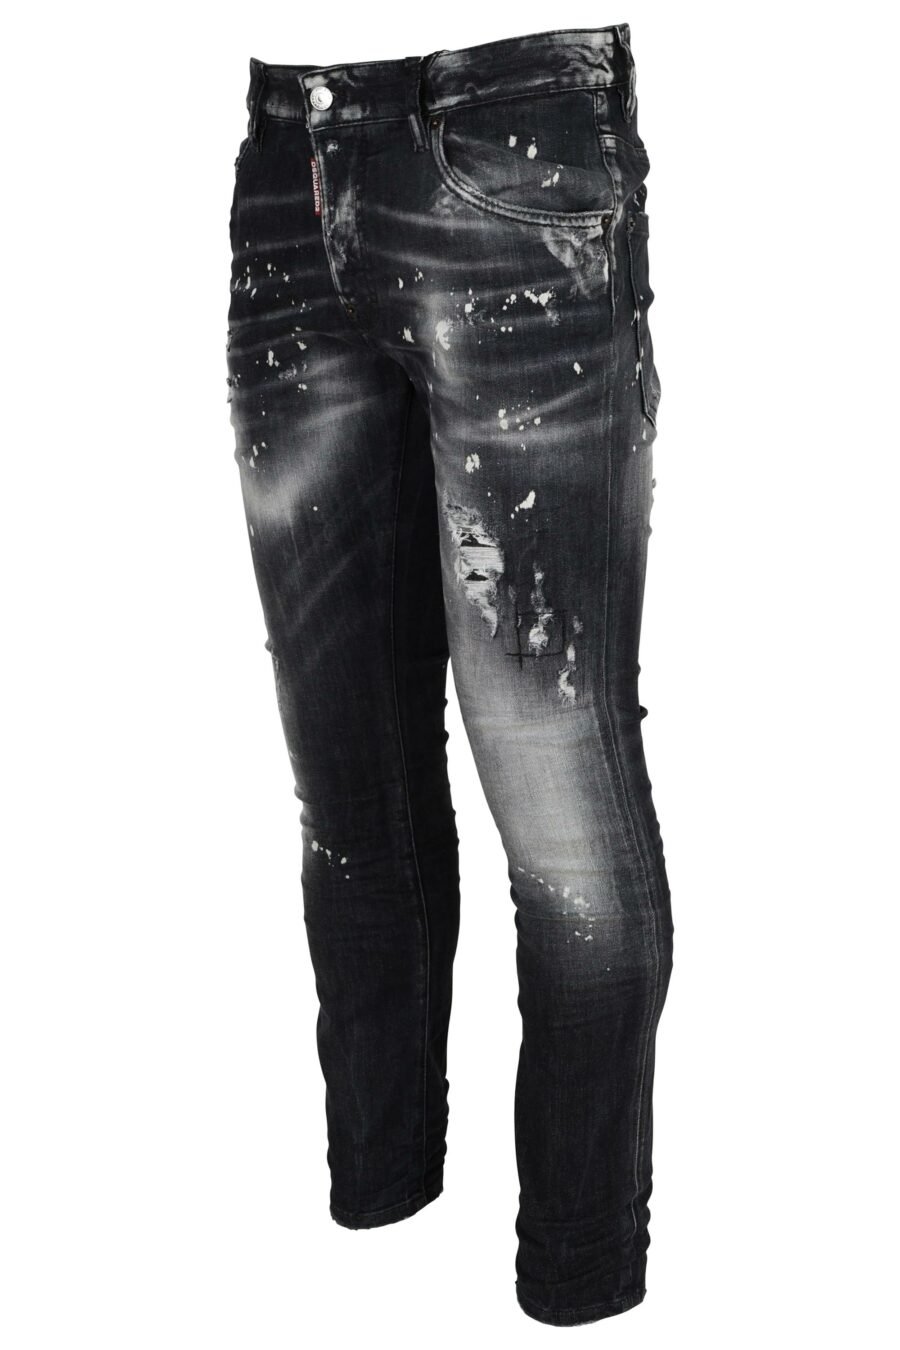 Schwarze Jeans "super twinky jean" mit Rissen und halb zerschlissen - 8054148473945 1